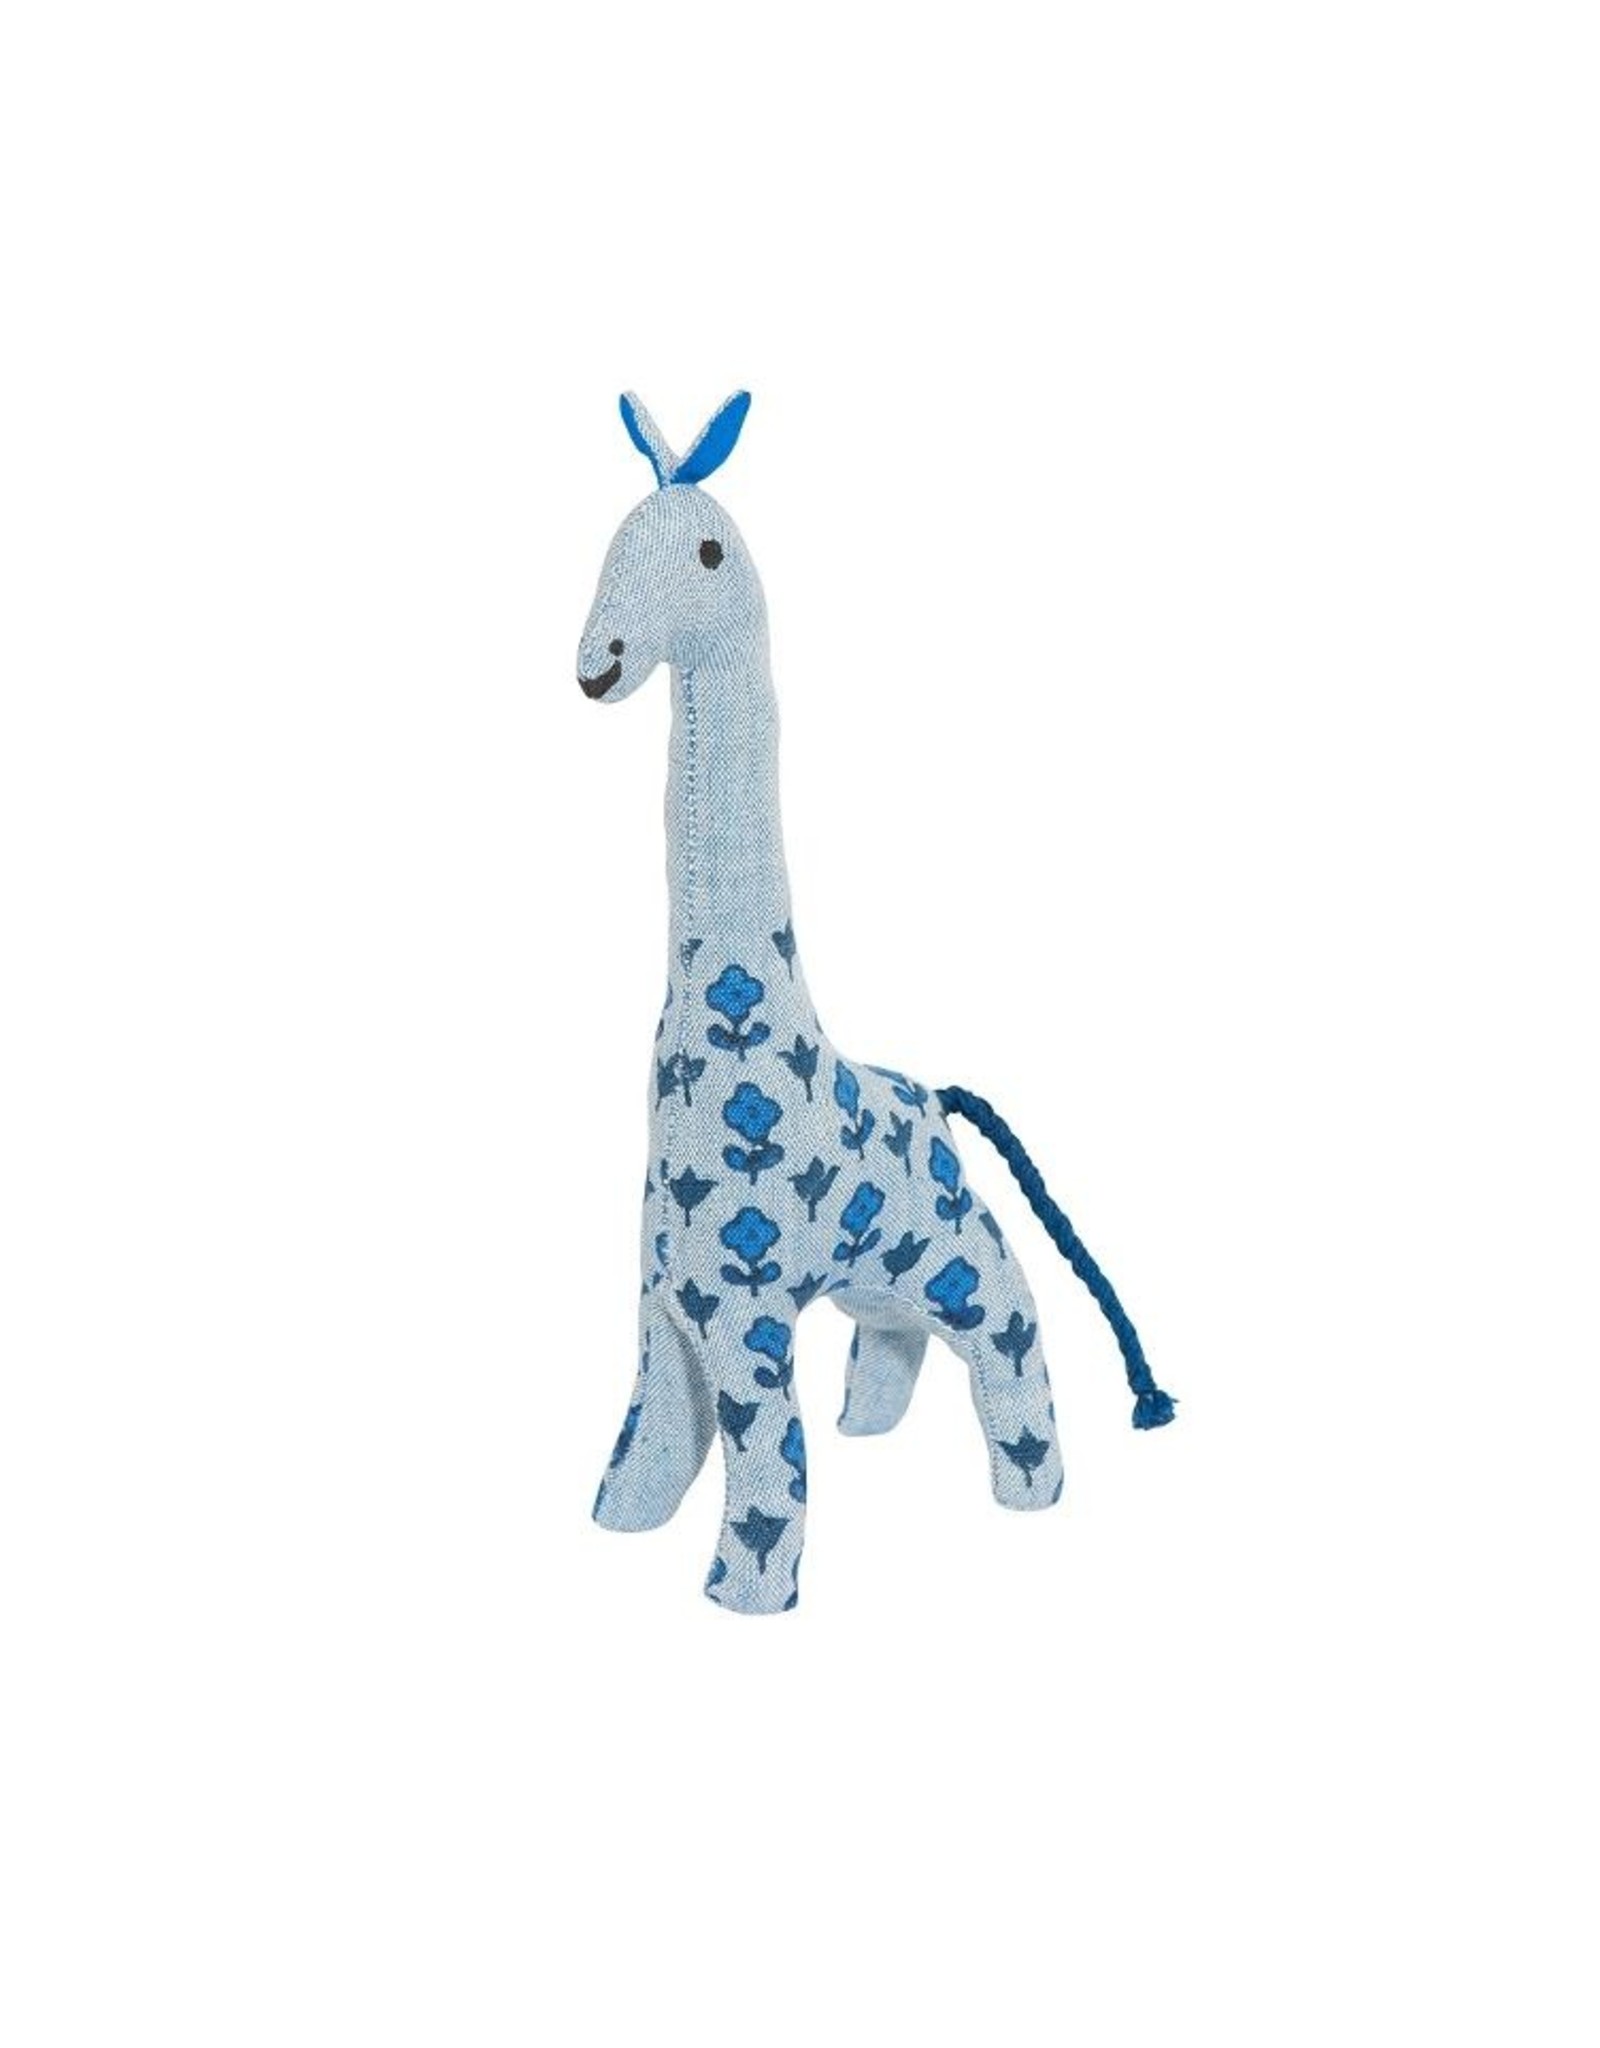 Scout handmade goods Giraffe Blockprint blau 100%BW Draht PES Füllung